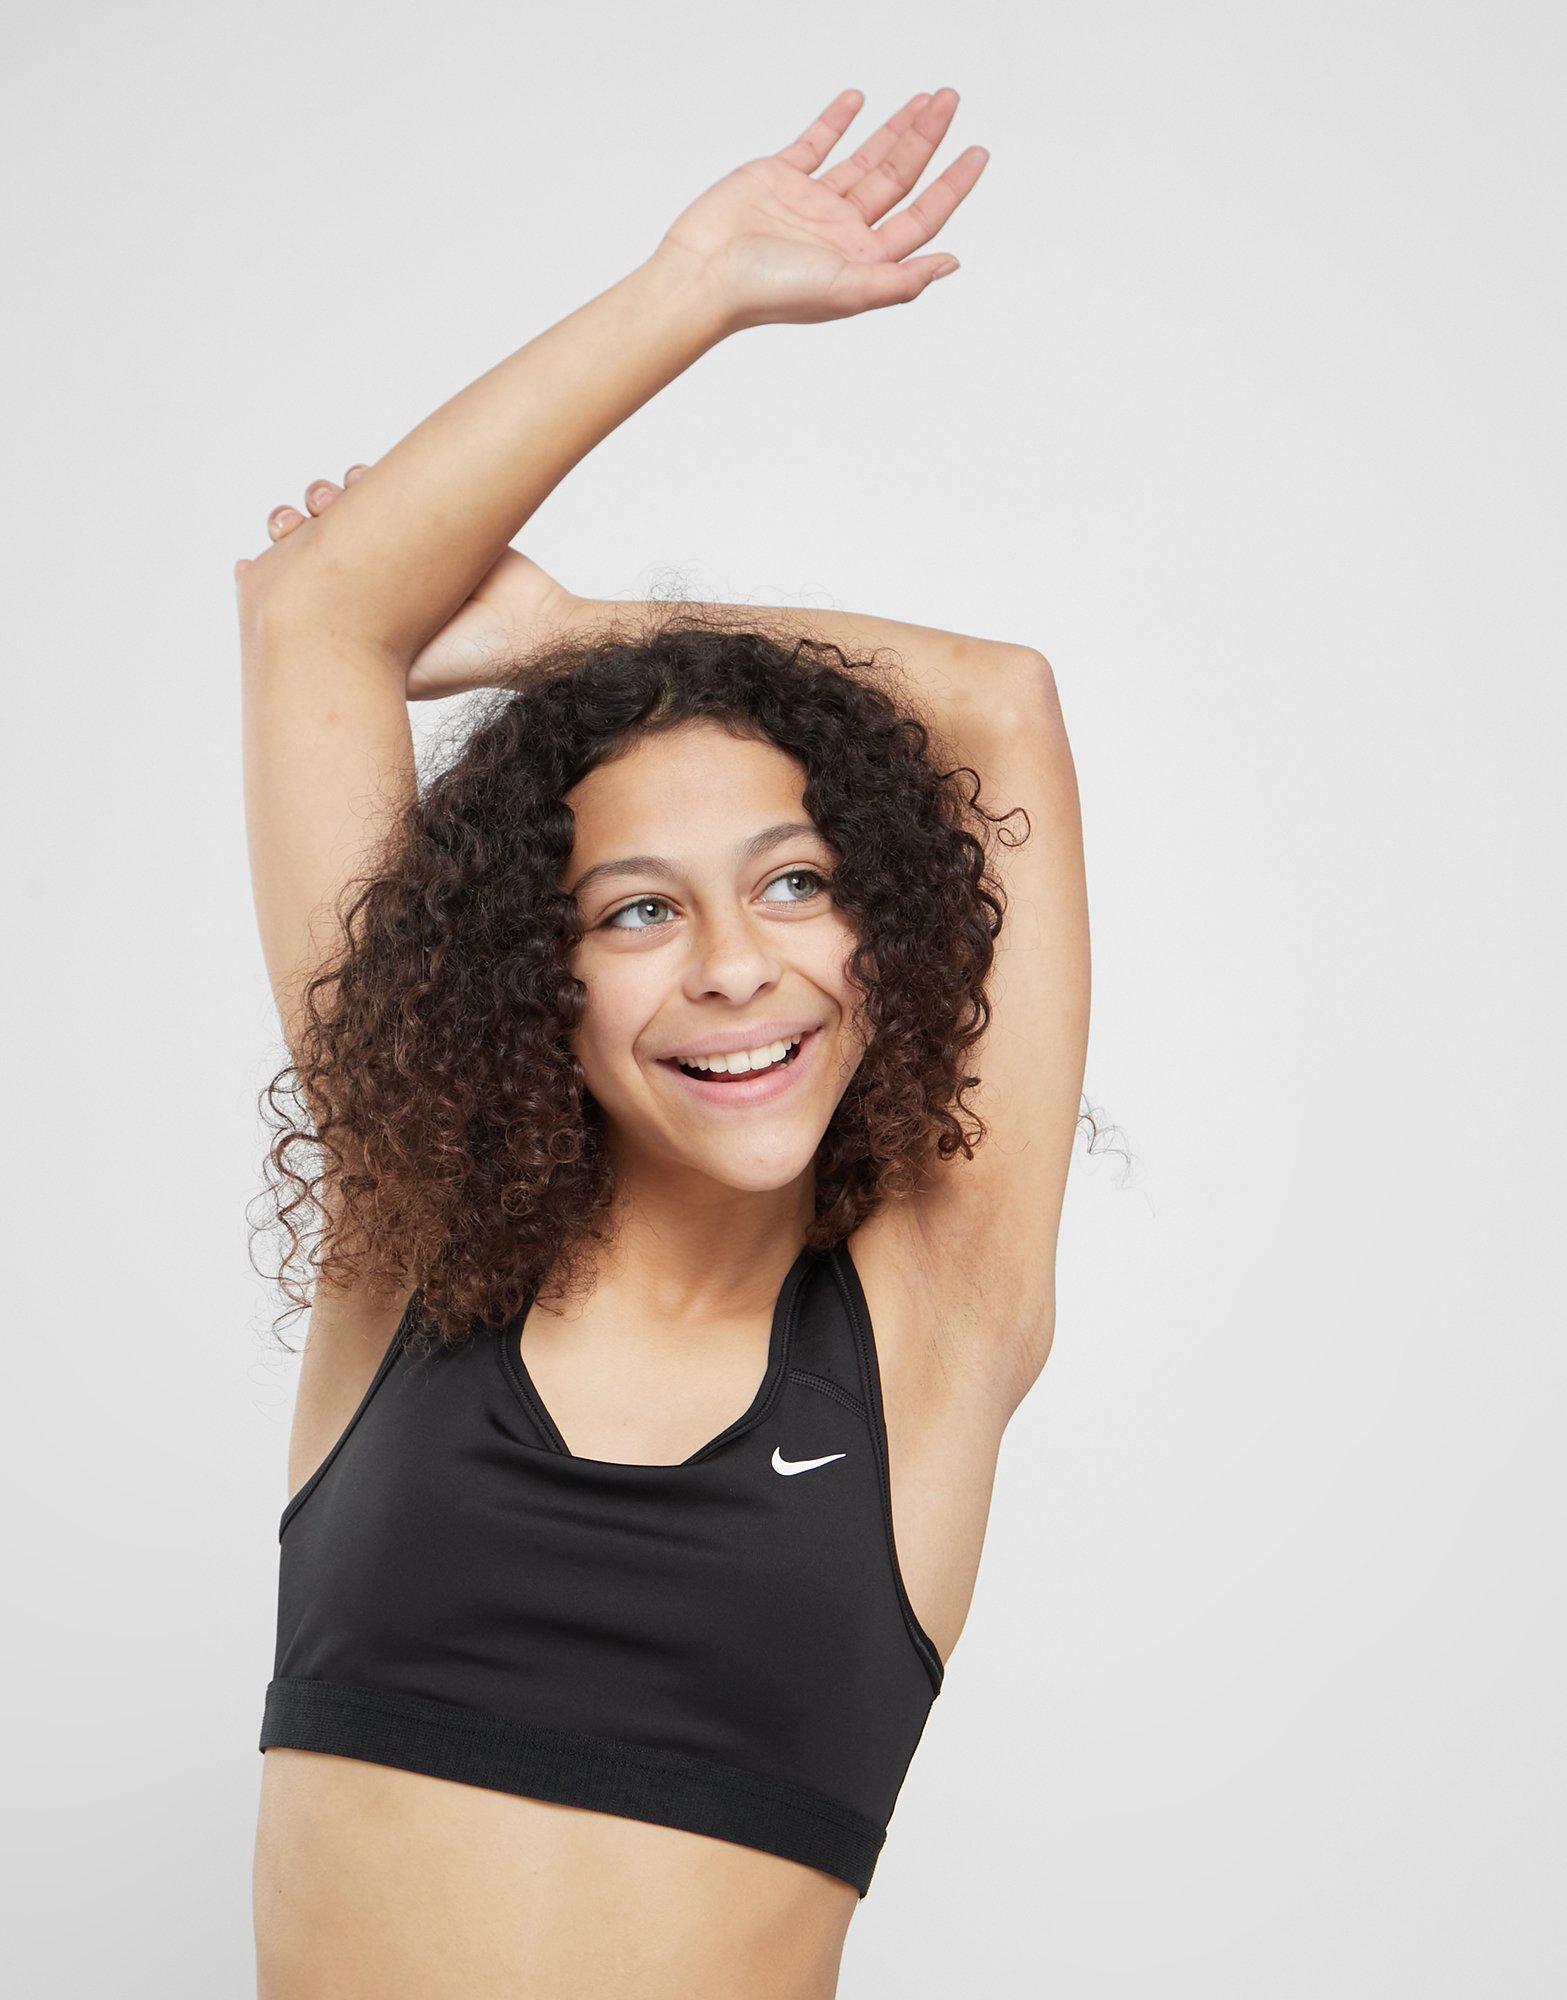 Nike Legging corsaire Nike Pro pour Fille plus âgée Noir- JD Sports France